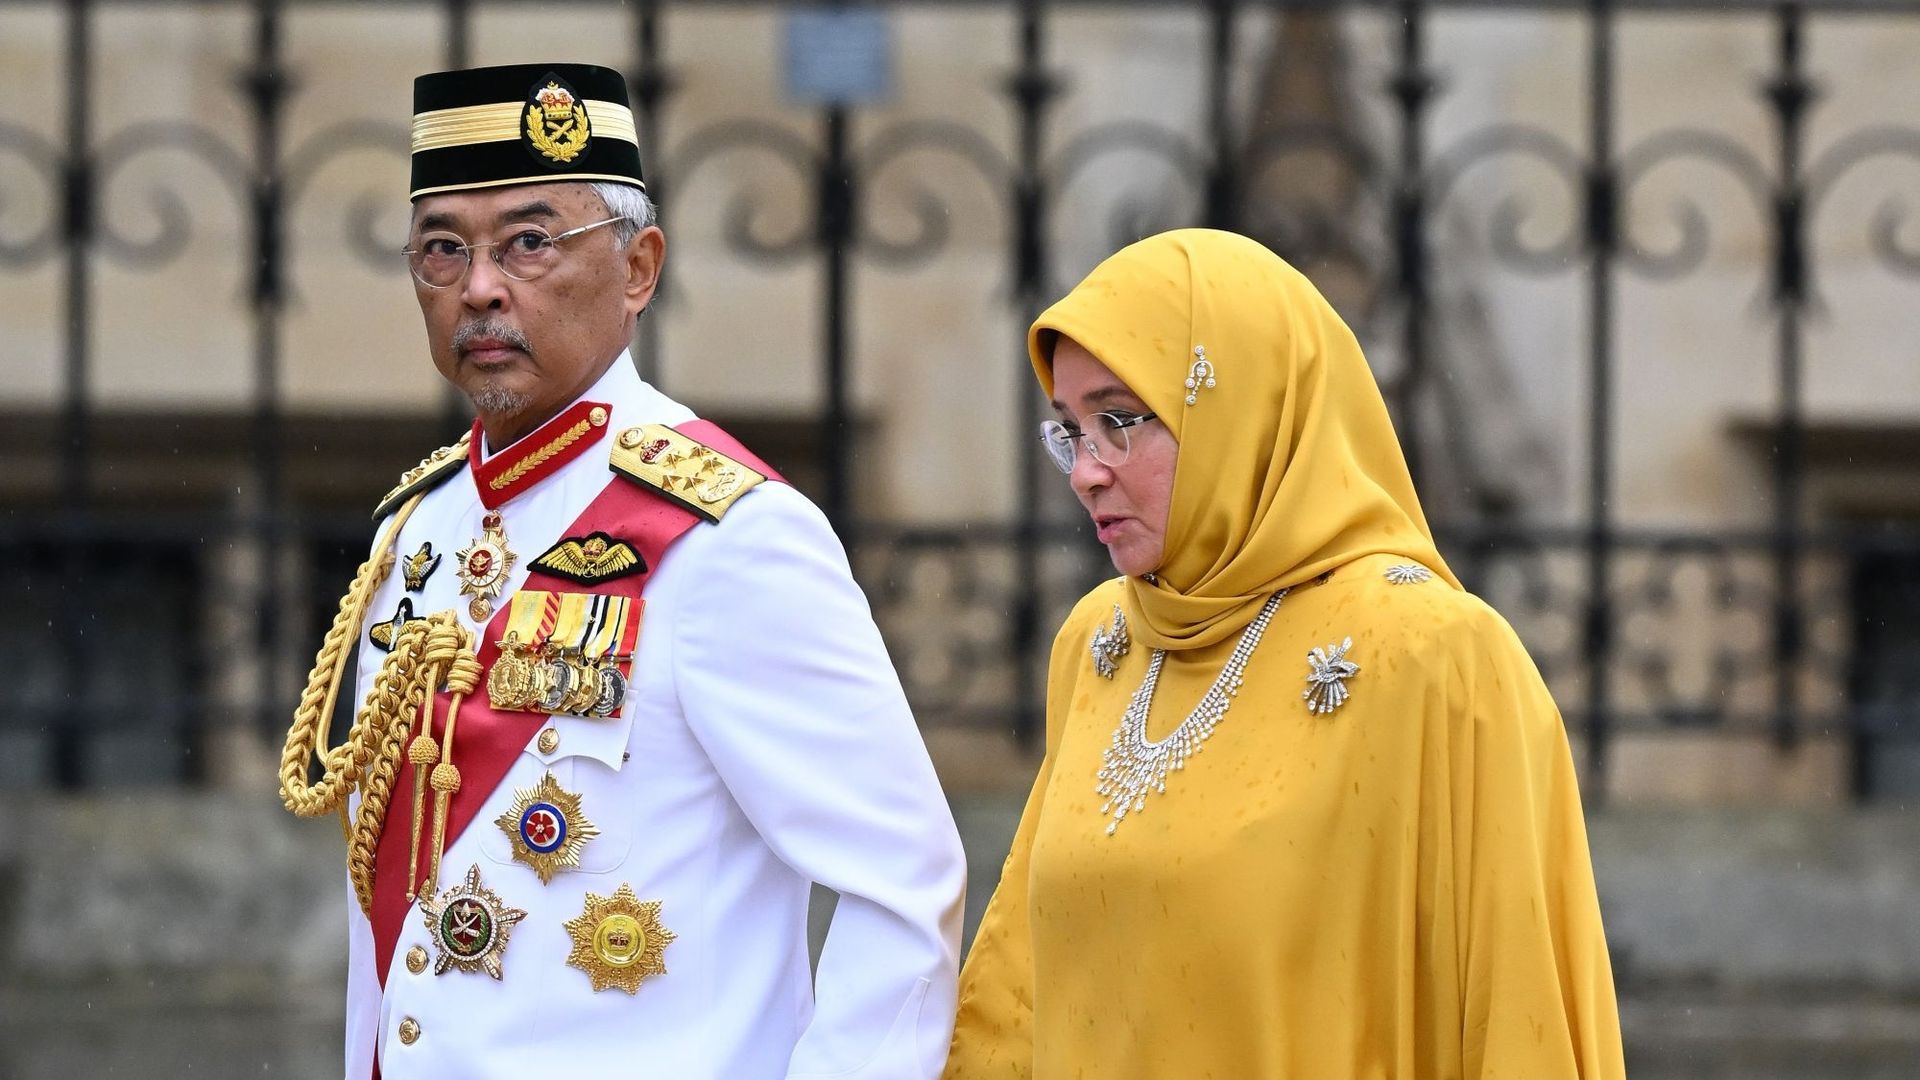 Sa Majesté Yang di-Pertuan Agong Al-Sultan Abdullah Ri’ayatuddin Al-Mustafa Billah Shah de Malaisie et Sa Majesté Raja Permaisuri Agong Tunku Hajah Azizah Aminah Maimunah Iskandariah de Malaisie.